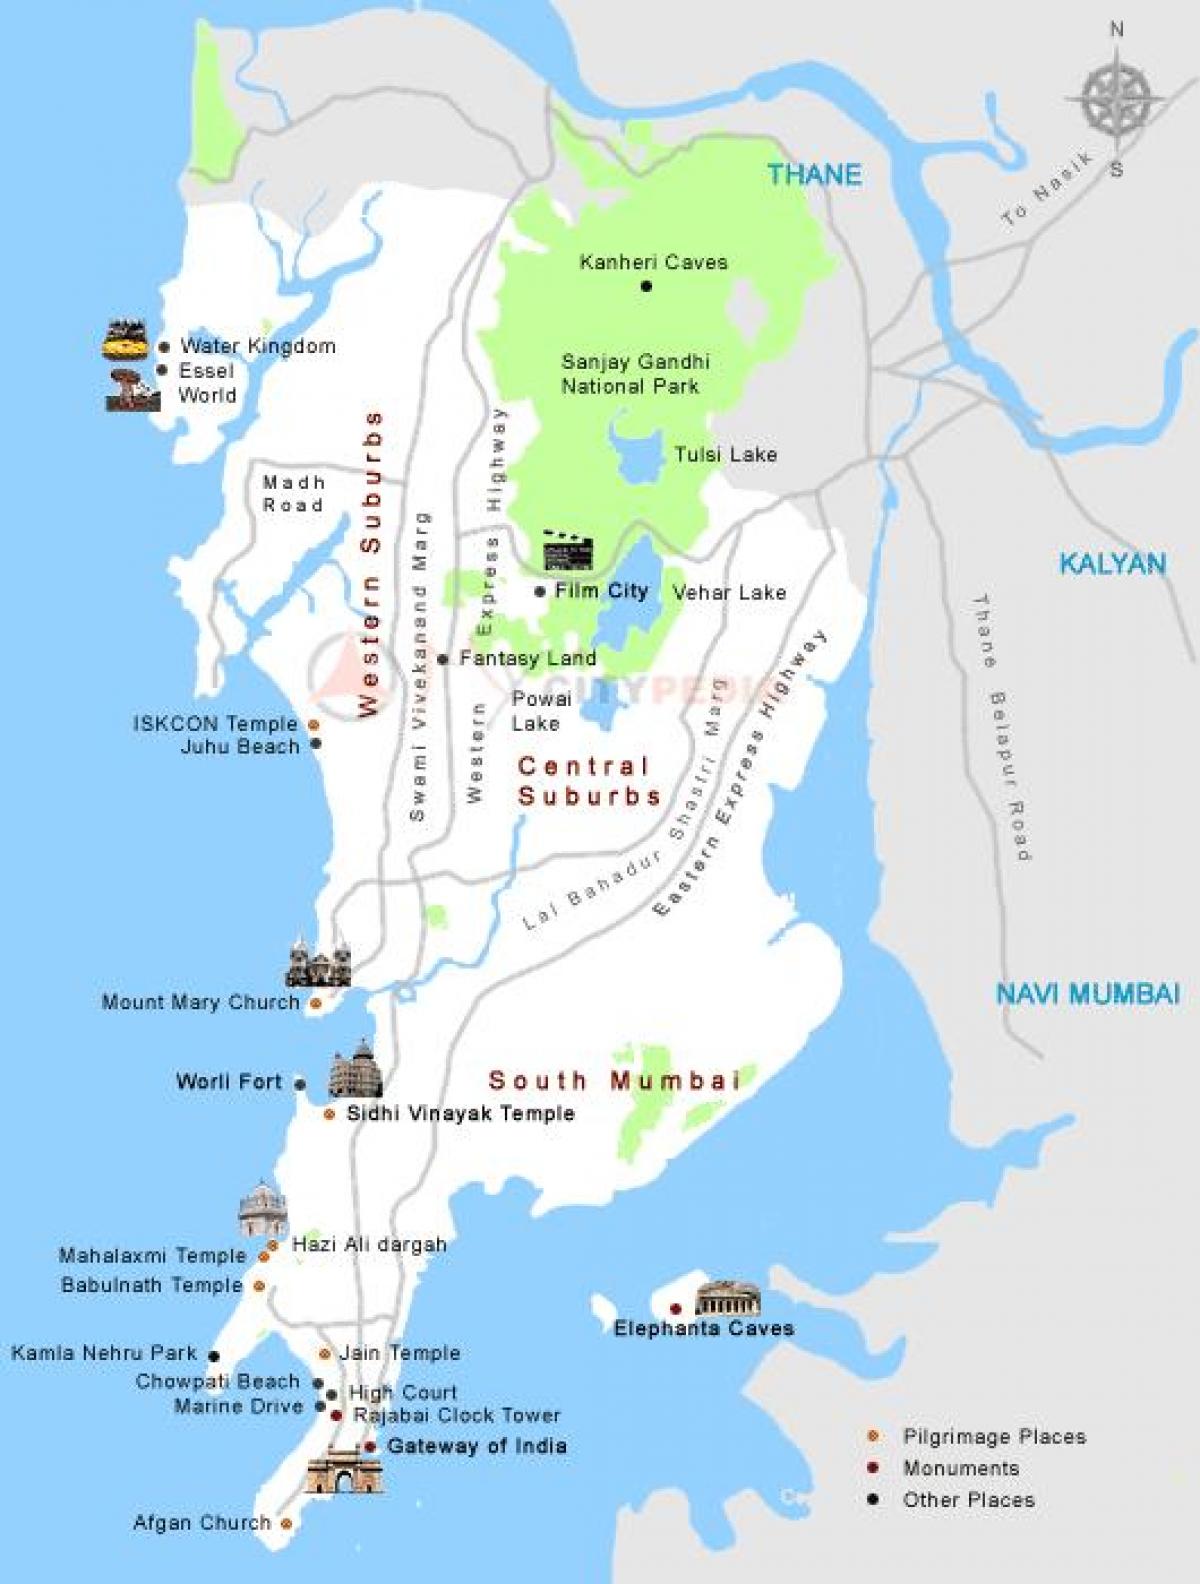 Darshan mumbai znajduje się na mapie